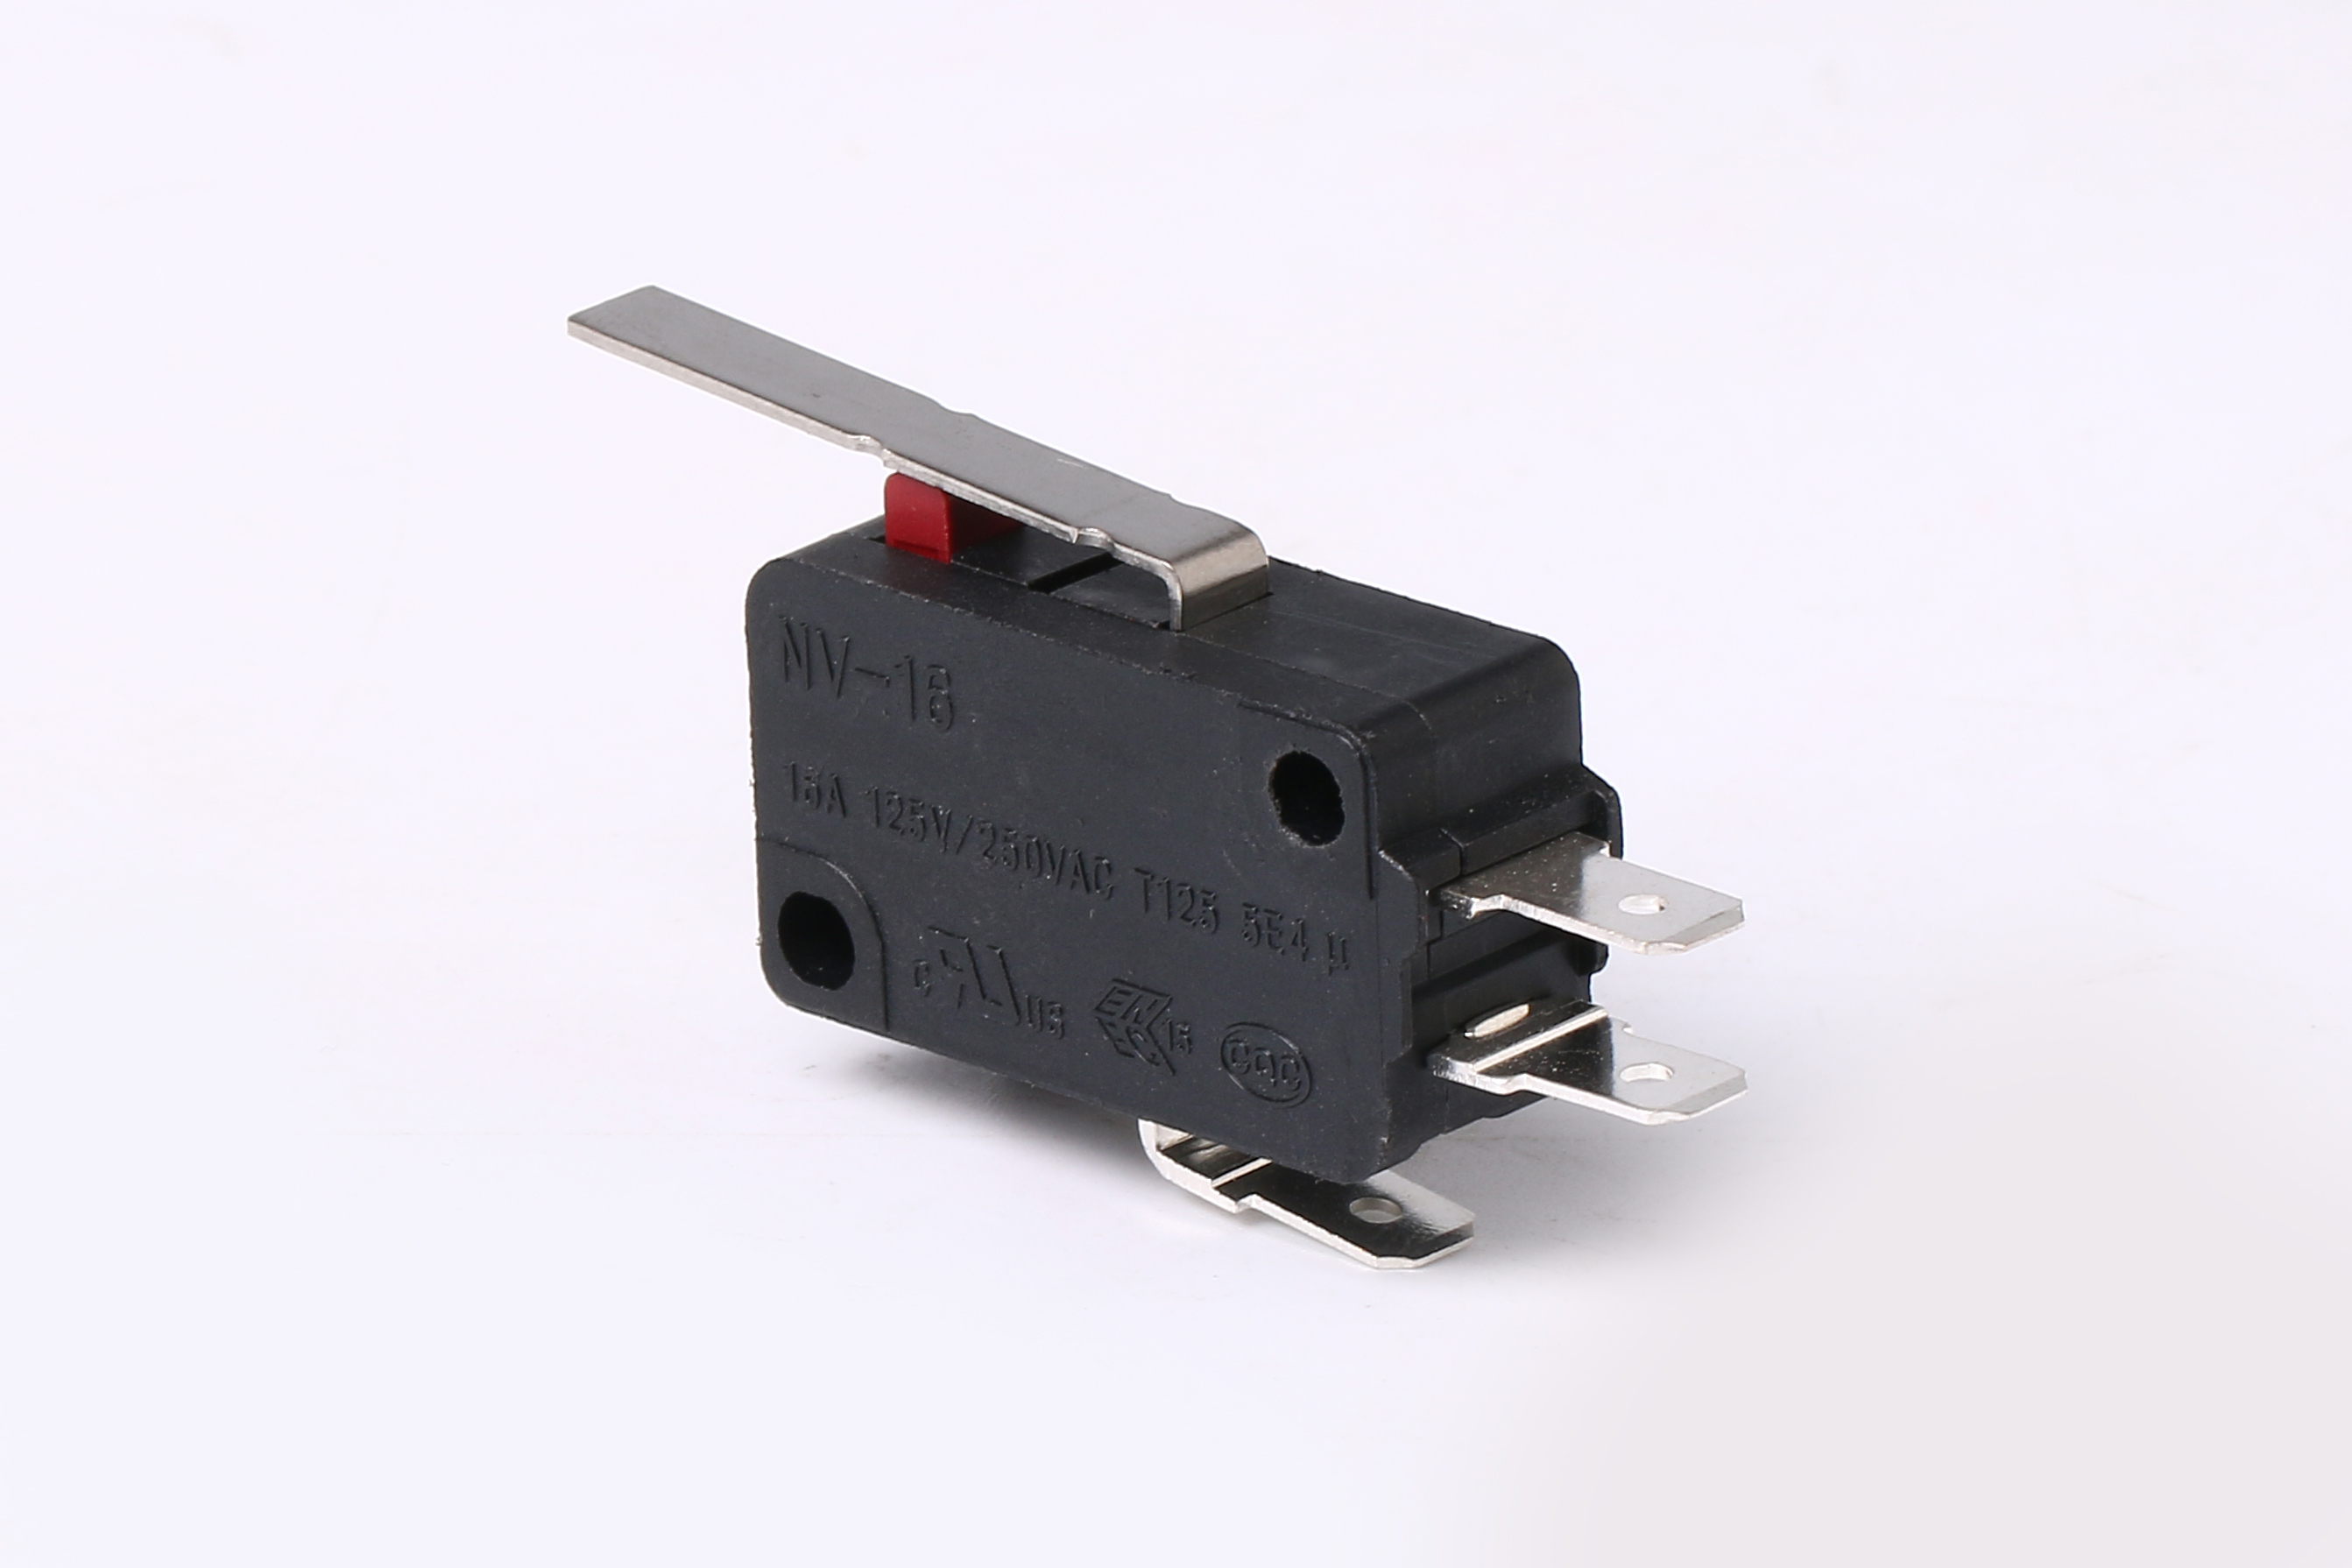 Microinterruptor de alta confiabilidad con palanca de bisagra de corriente de conmutación de hasta 21A